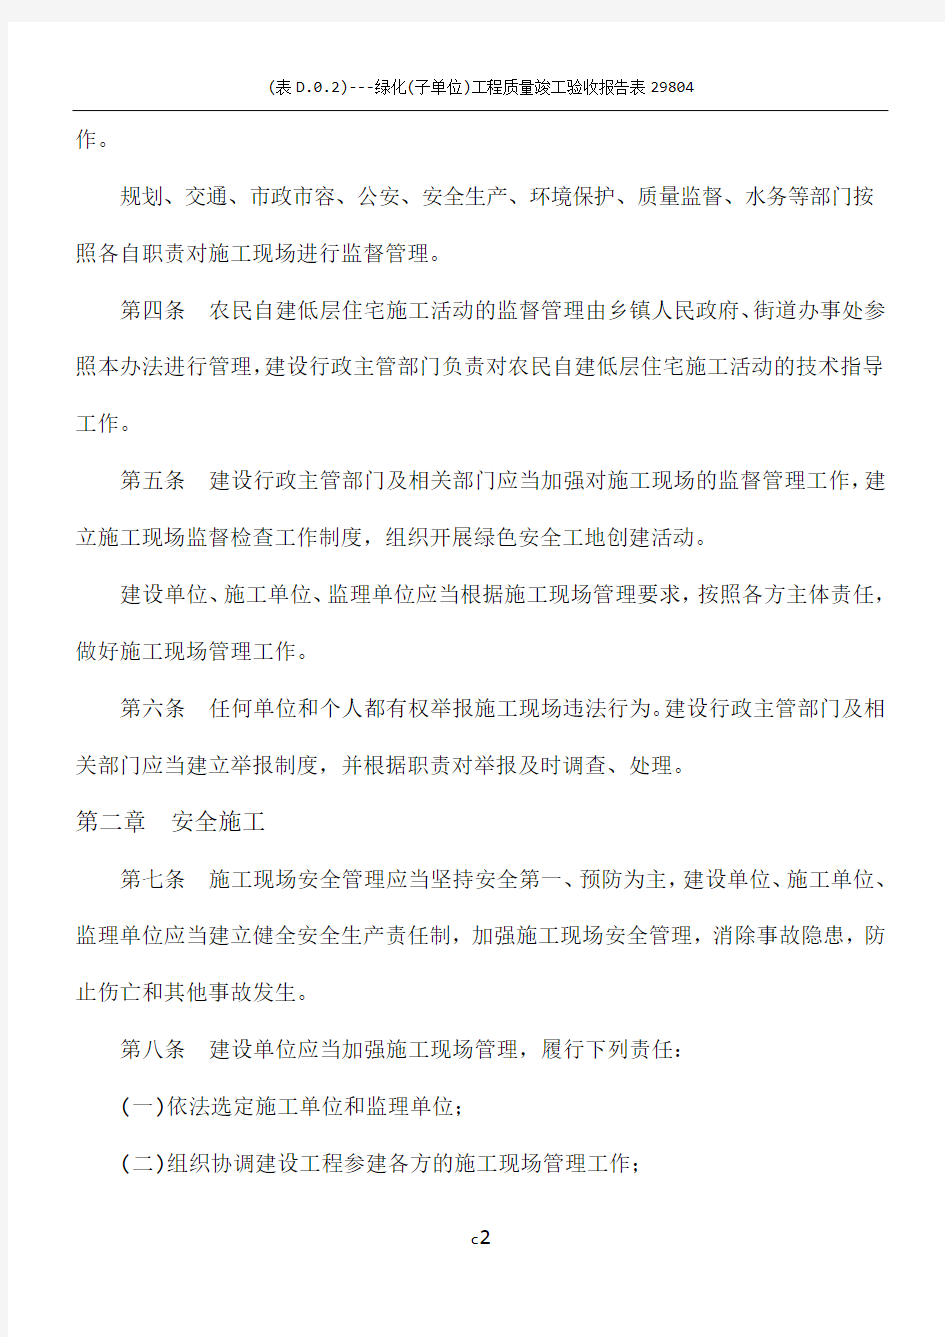 北京市建设工程施工现场管理办法(2013年5月7日)